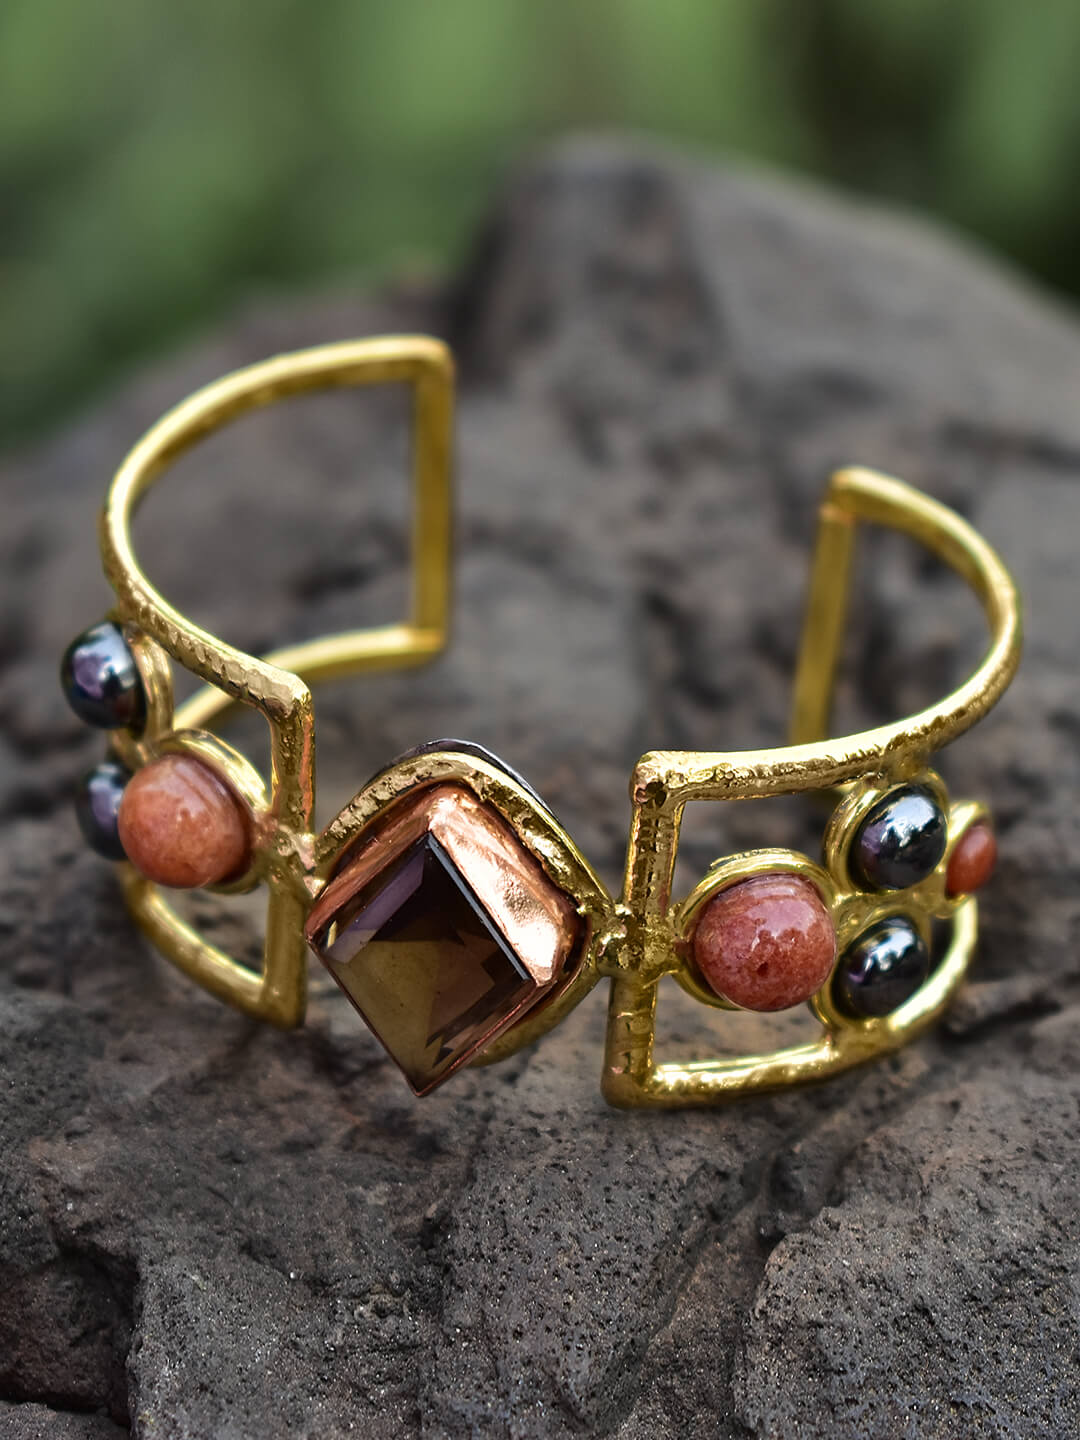 Festive Season Jewelry-Cuff Bracelet